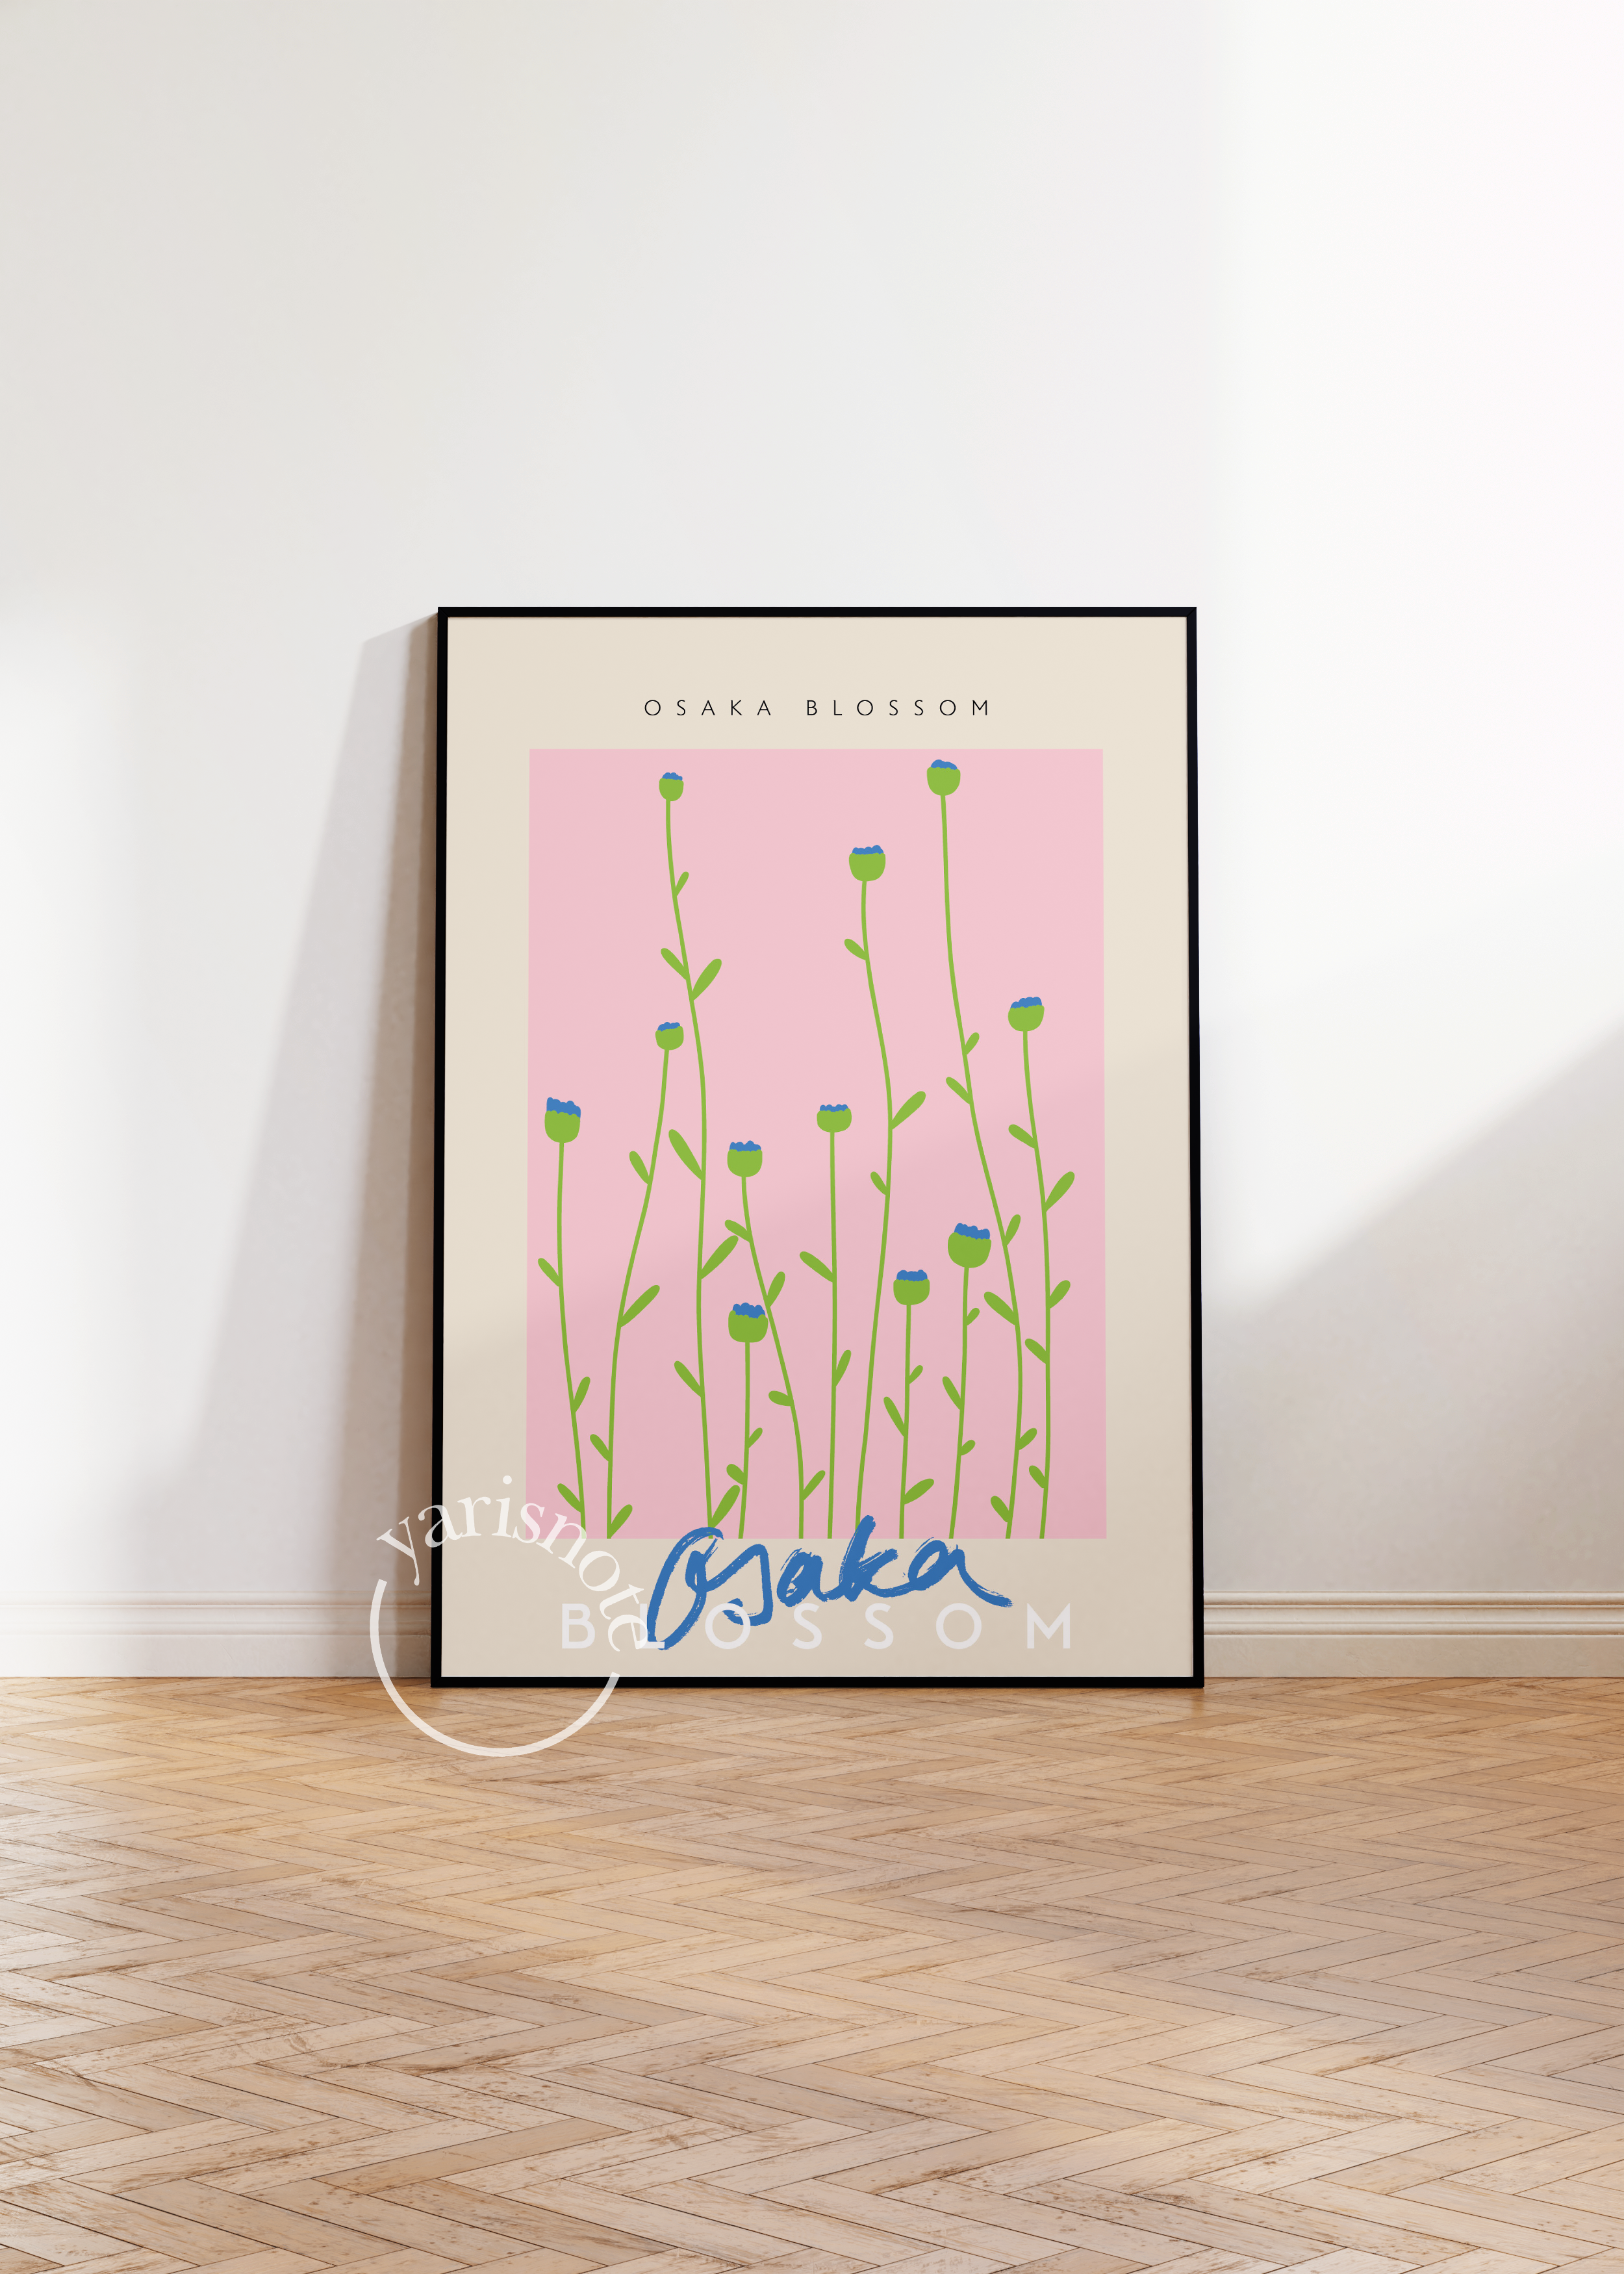 Osaka Blossom Unframed Poster